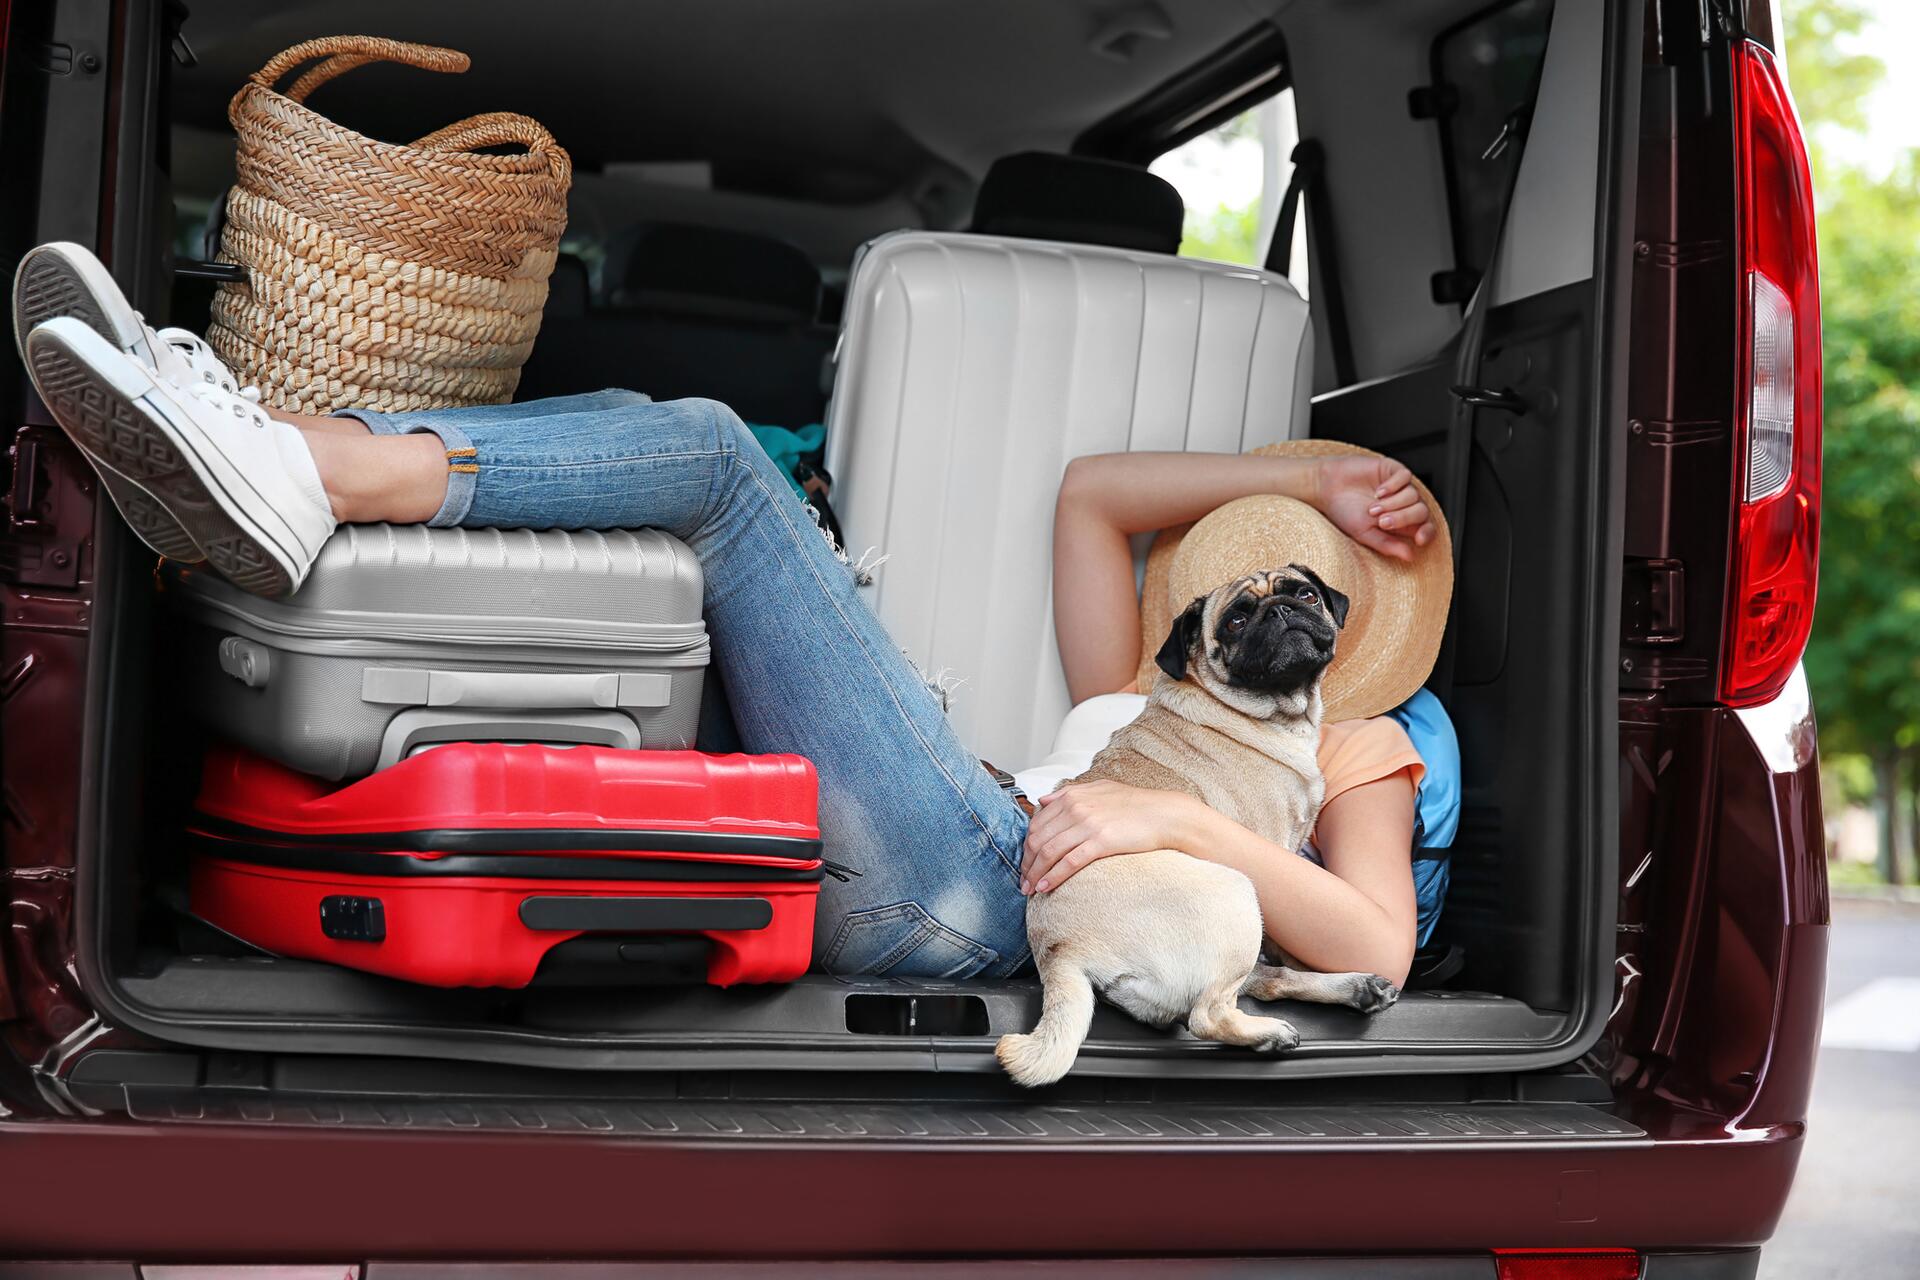 Kde lze spát v autě na dovolené? Některé země spánek v autě zakazují